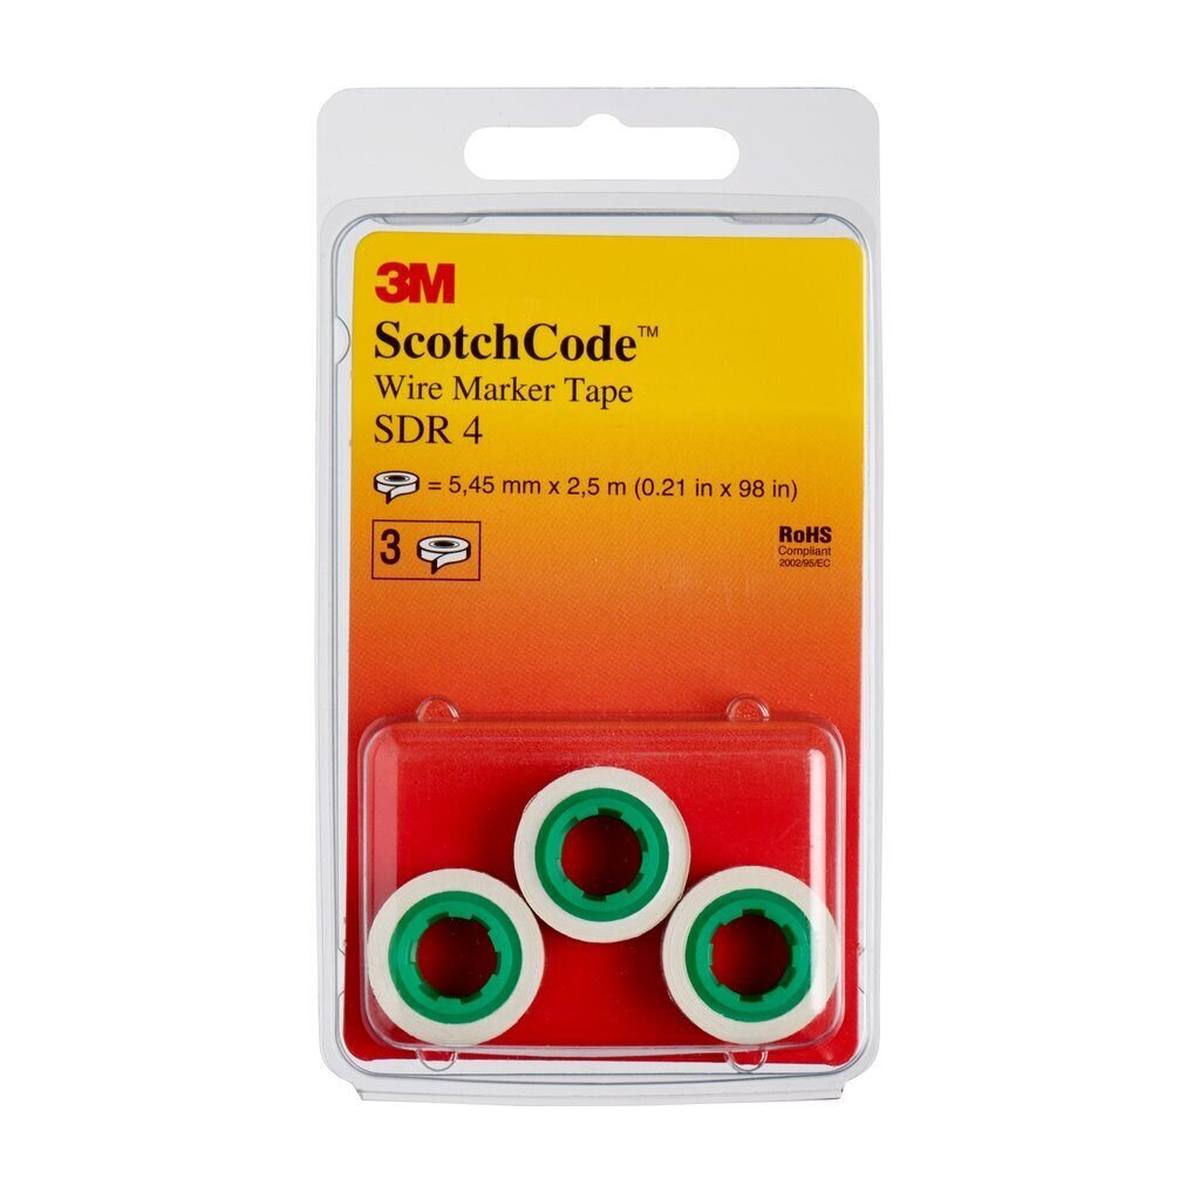 3M ScotchCode SDR-4 rollos de recambio de marcador de cables, número 4, paquete de 3